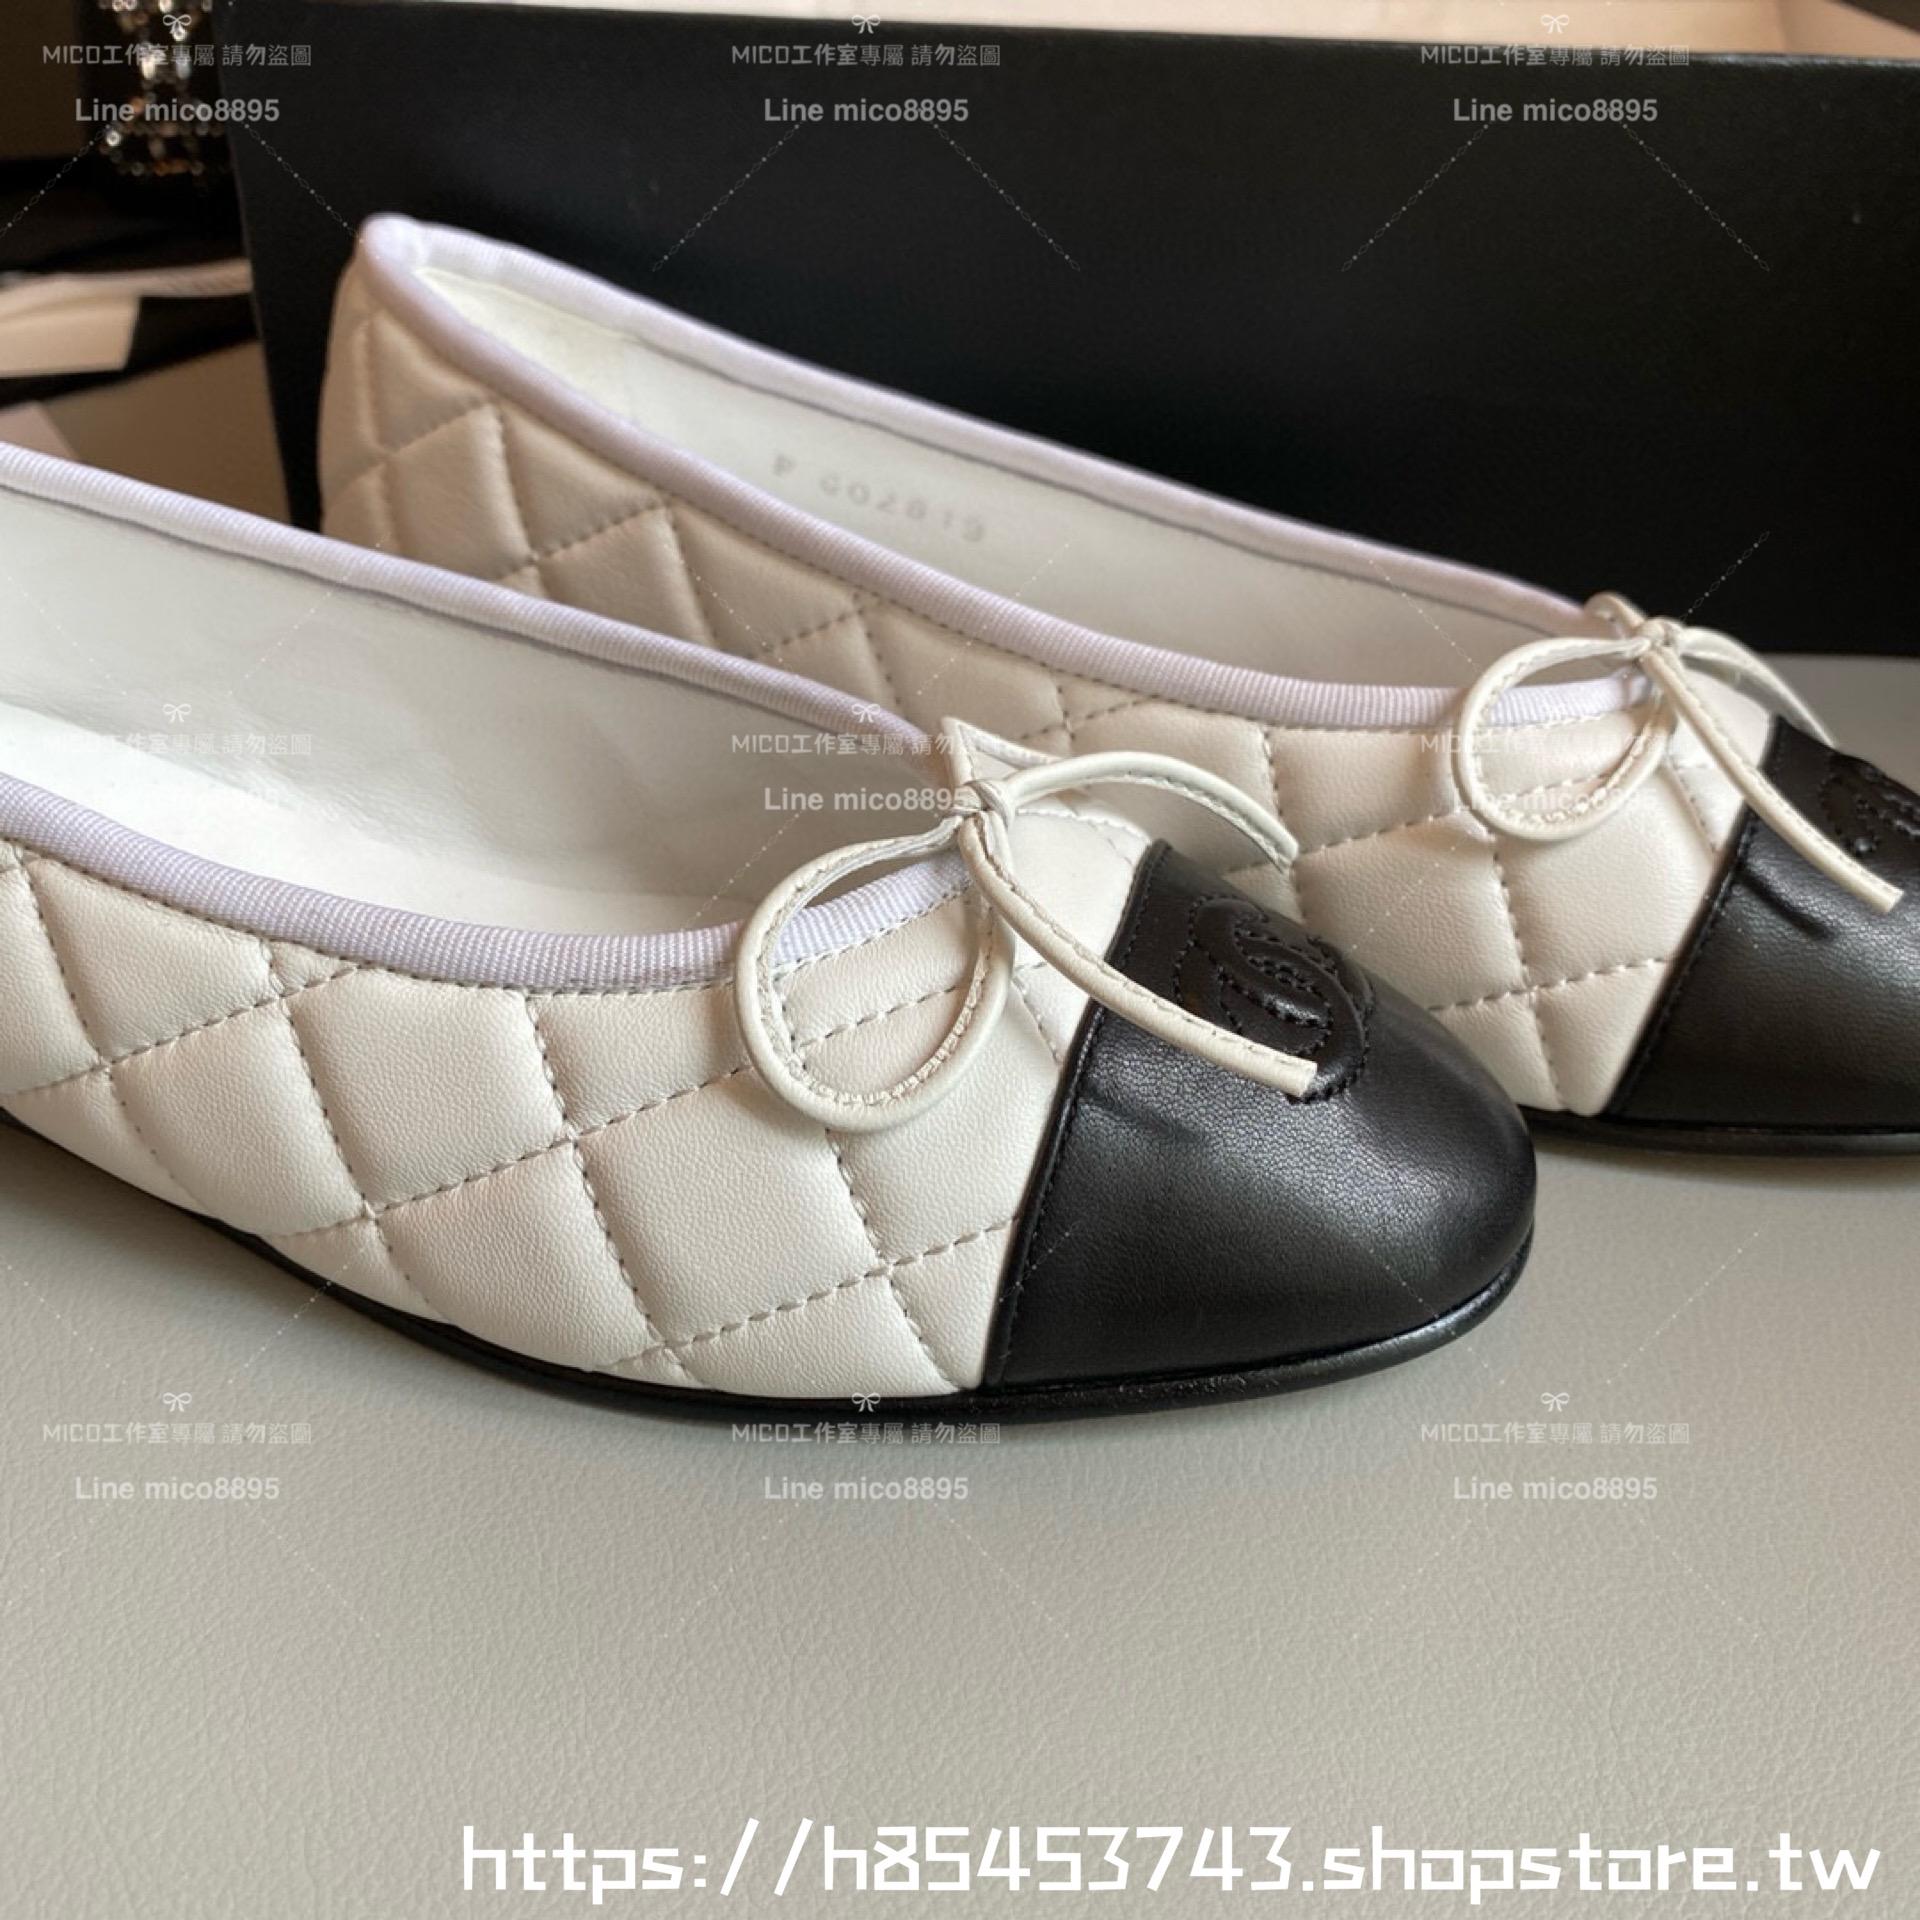 CHANEL 小香 經典款芭蕾舞鞋 白色羊皮 菱格款平底鞋/女鞋 Size：35-39（34.40.41.42定做不退换）